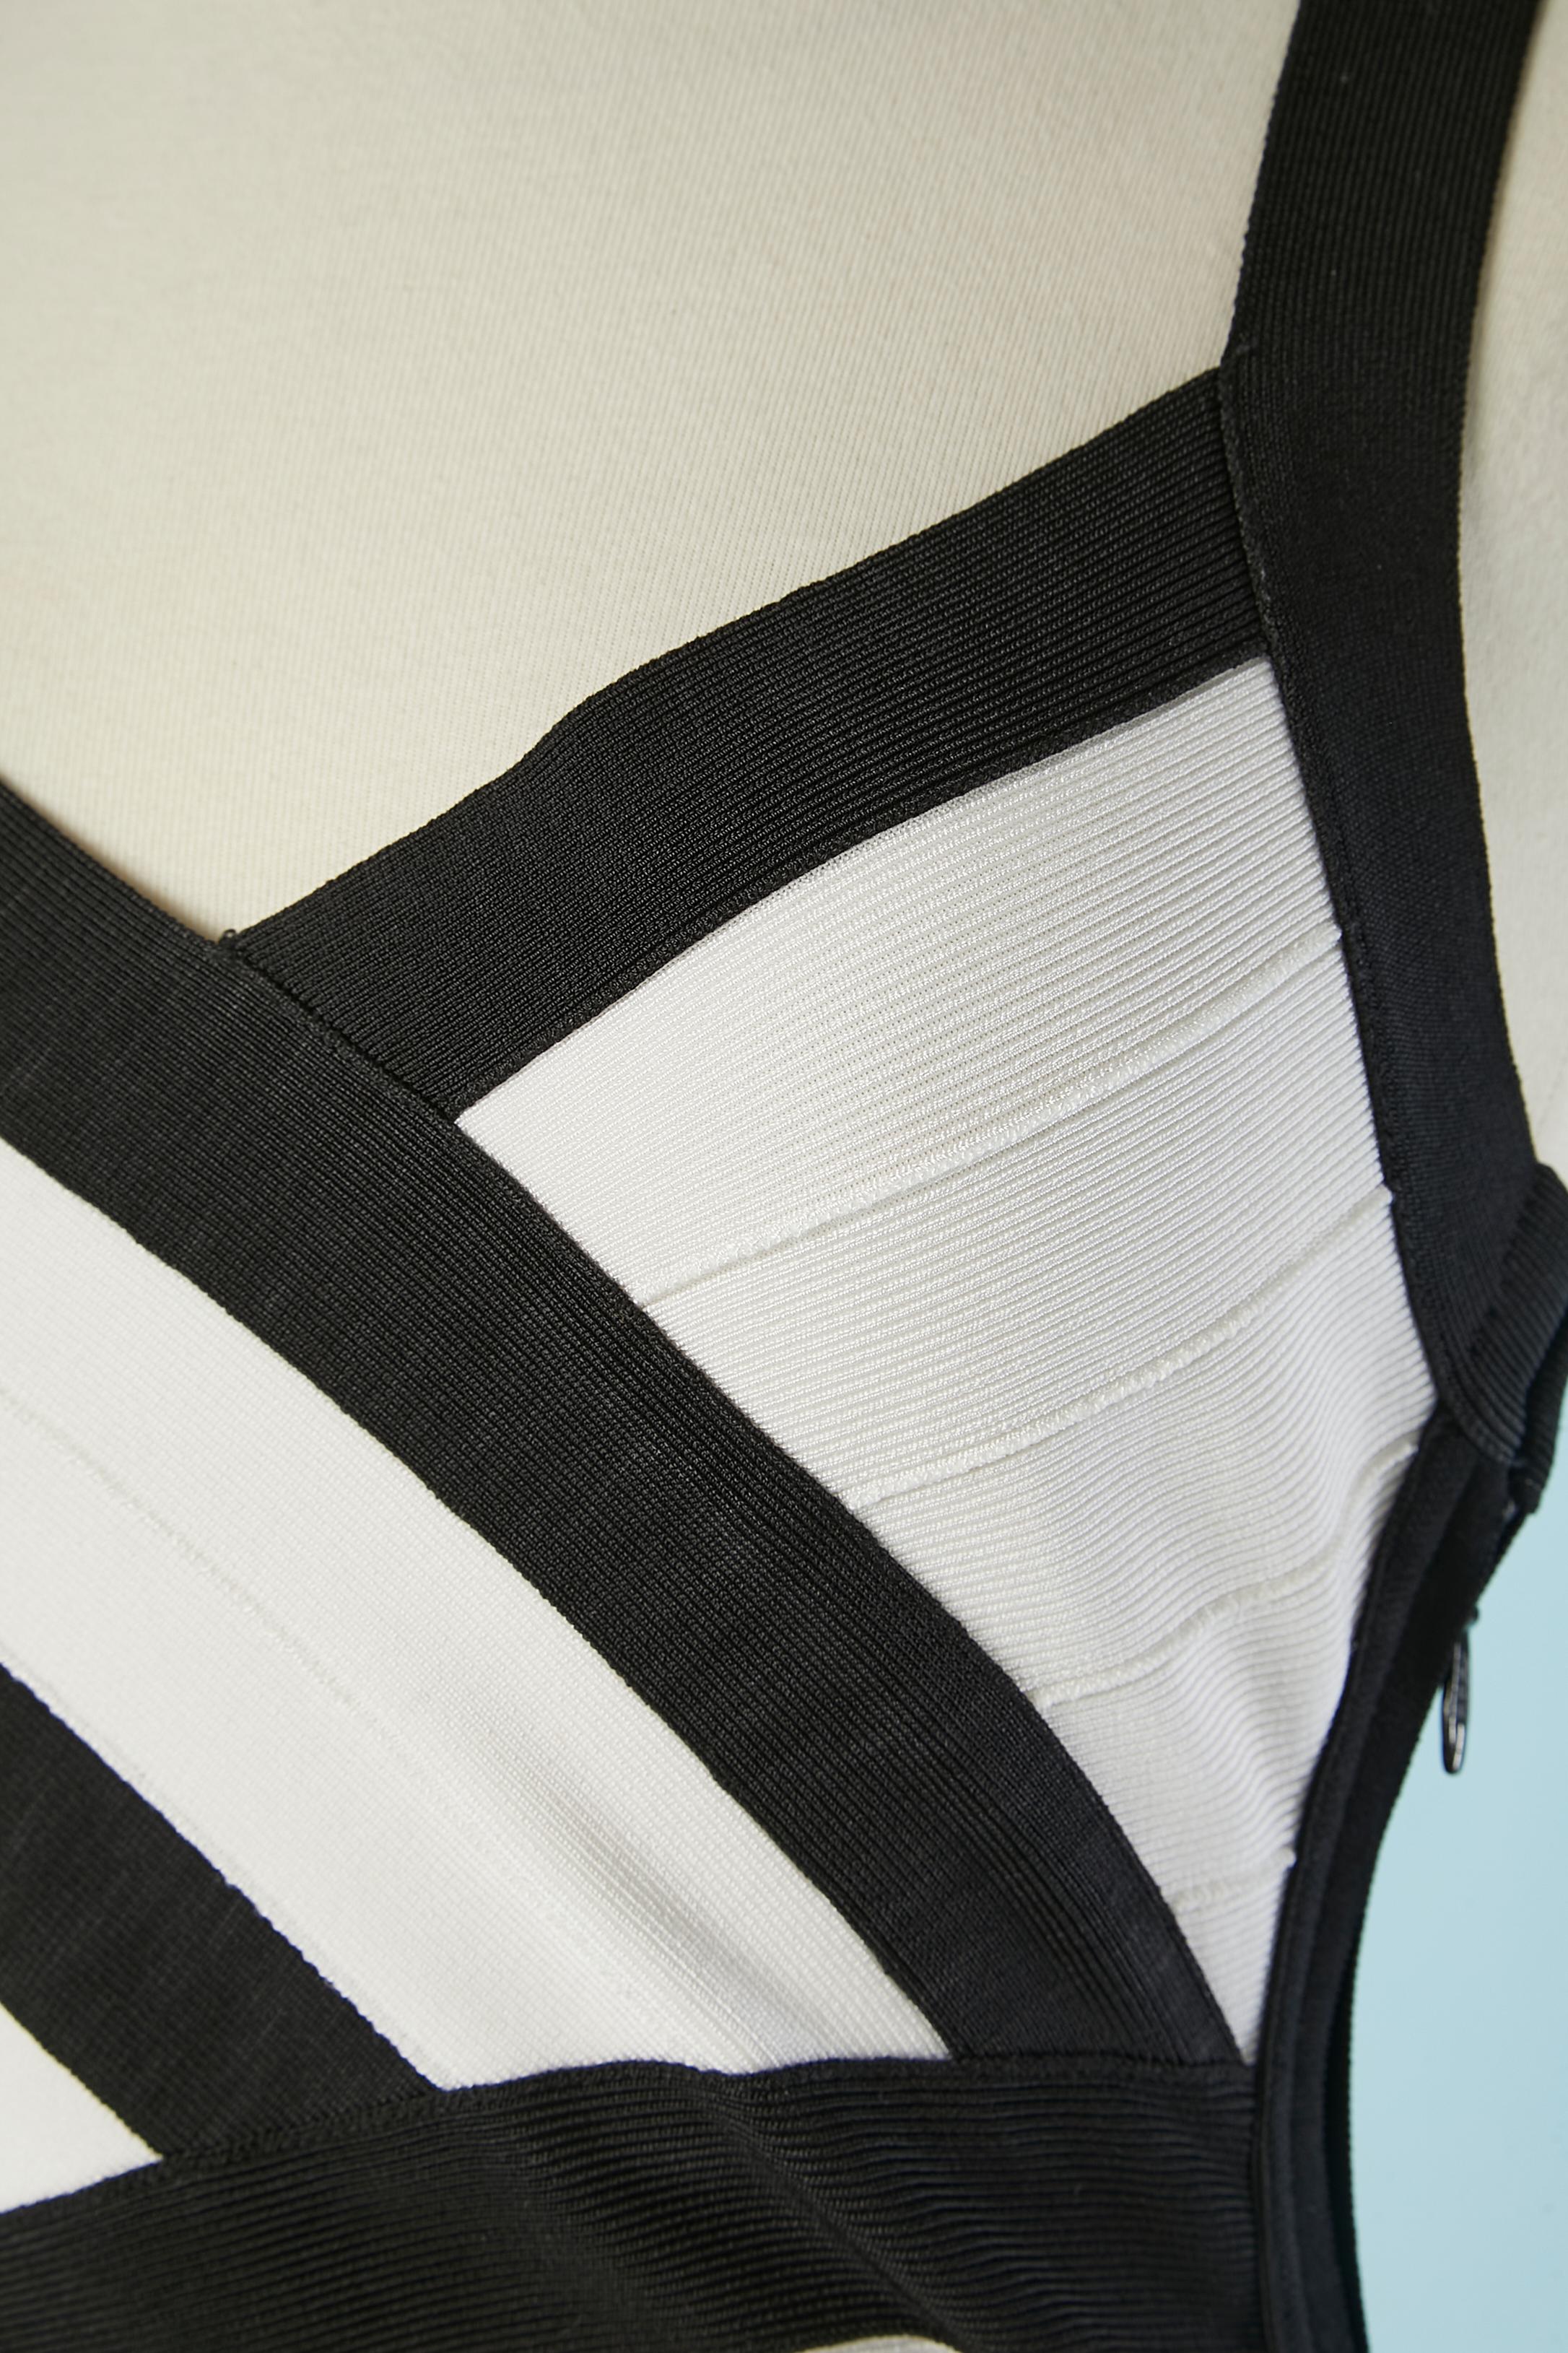 Robe de cocktail en rayonne tricotée noire et blanche. Composition du tissu : 90% rayonne, 9% nylon, 1% spandex. 
Fermeture éclair sur le côté gauche + 3 crochets. 
Taille M sur l'étiquette mais taille plutôt XS